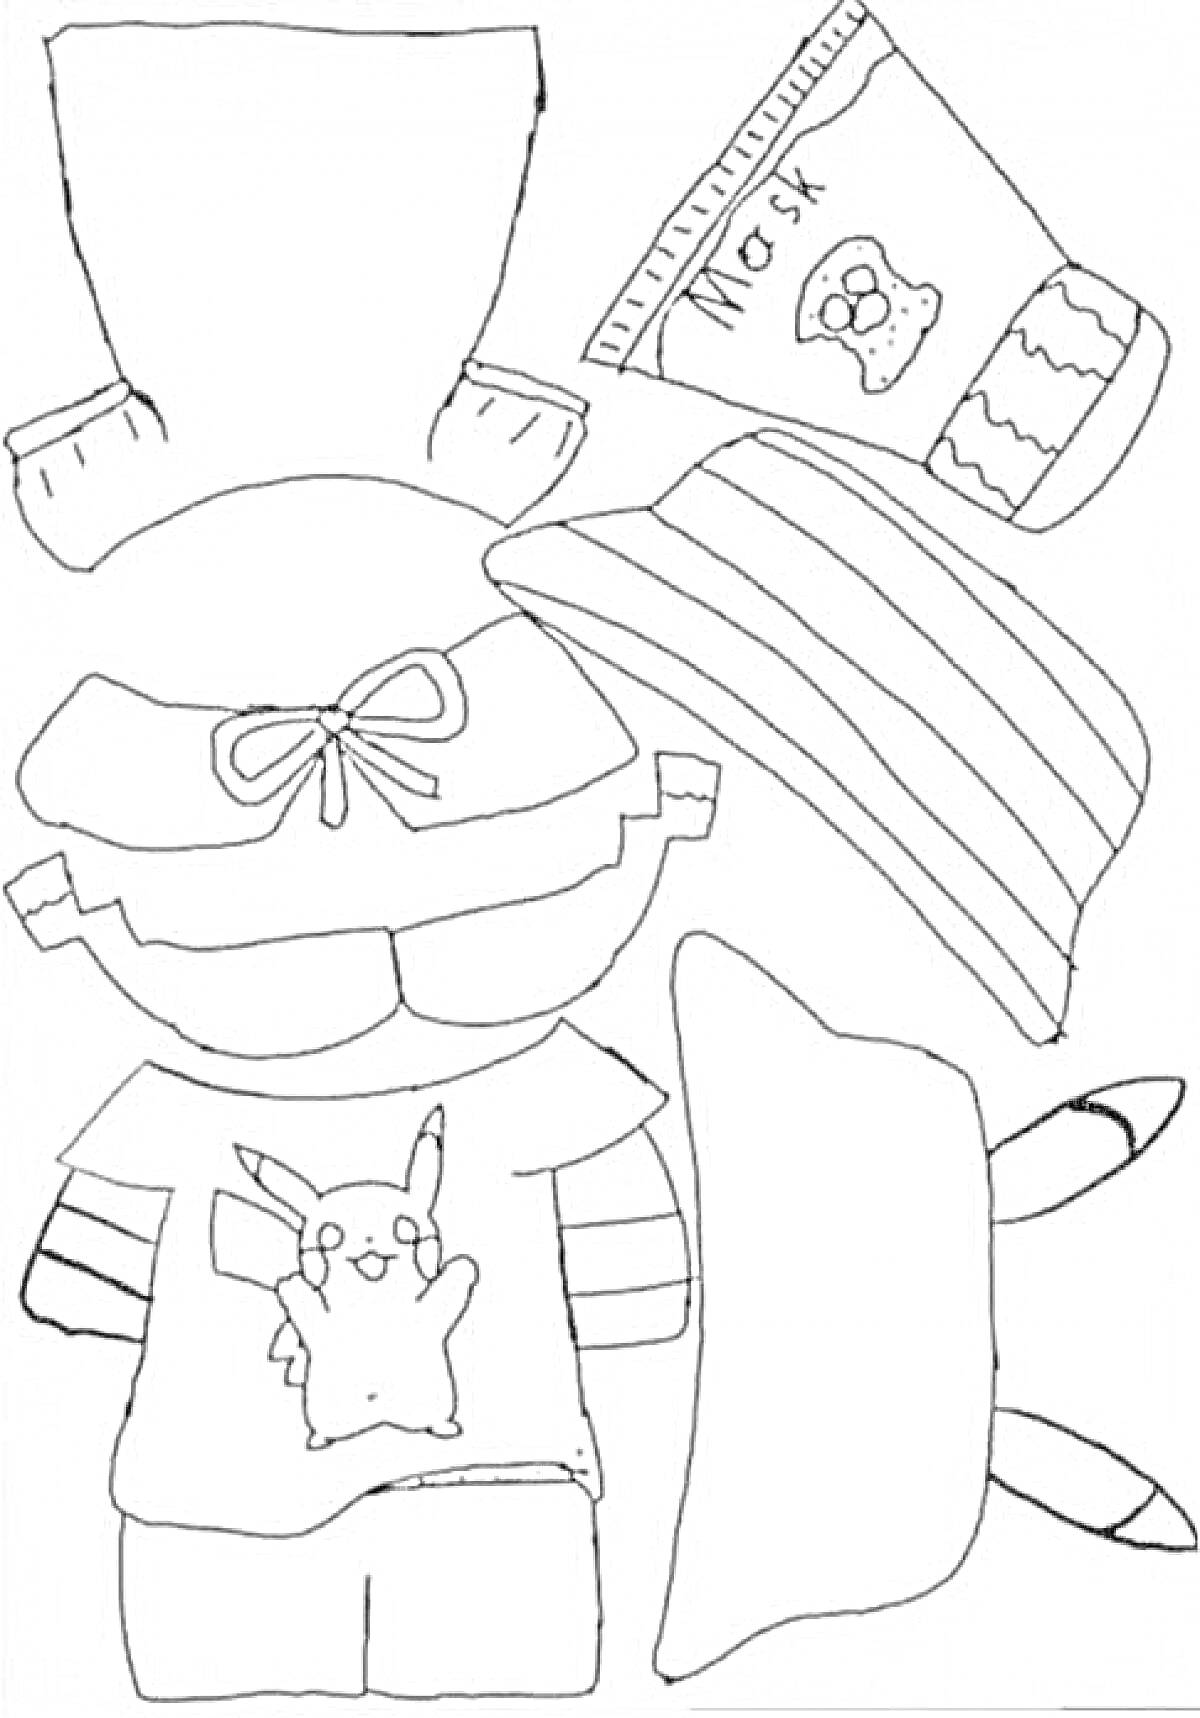 Раскраска Уточка Лалафанфан с одеждой и едой, в комплекте футболка с изображением Пикачу, шорты, кепка с бантом, полосатый шарф, нарукавники, пачка сока, и две конфеты.